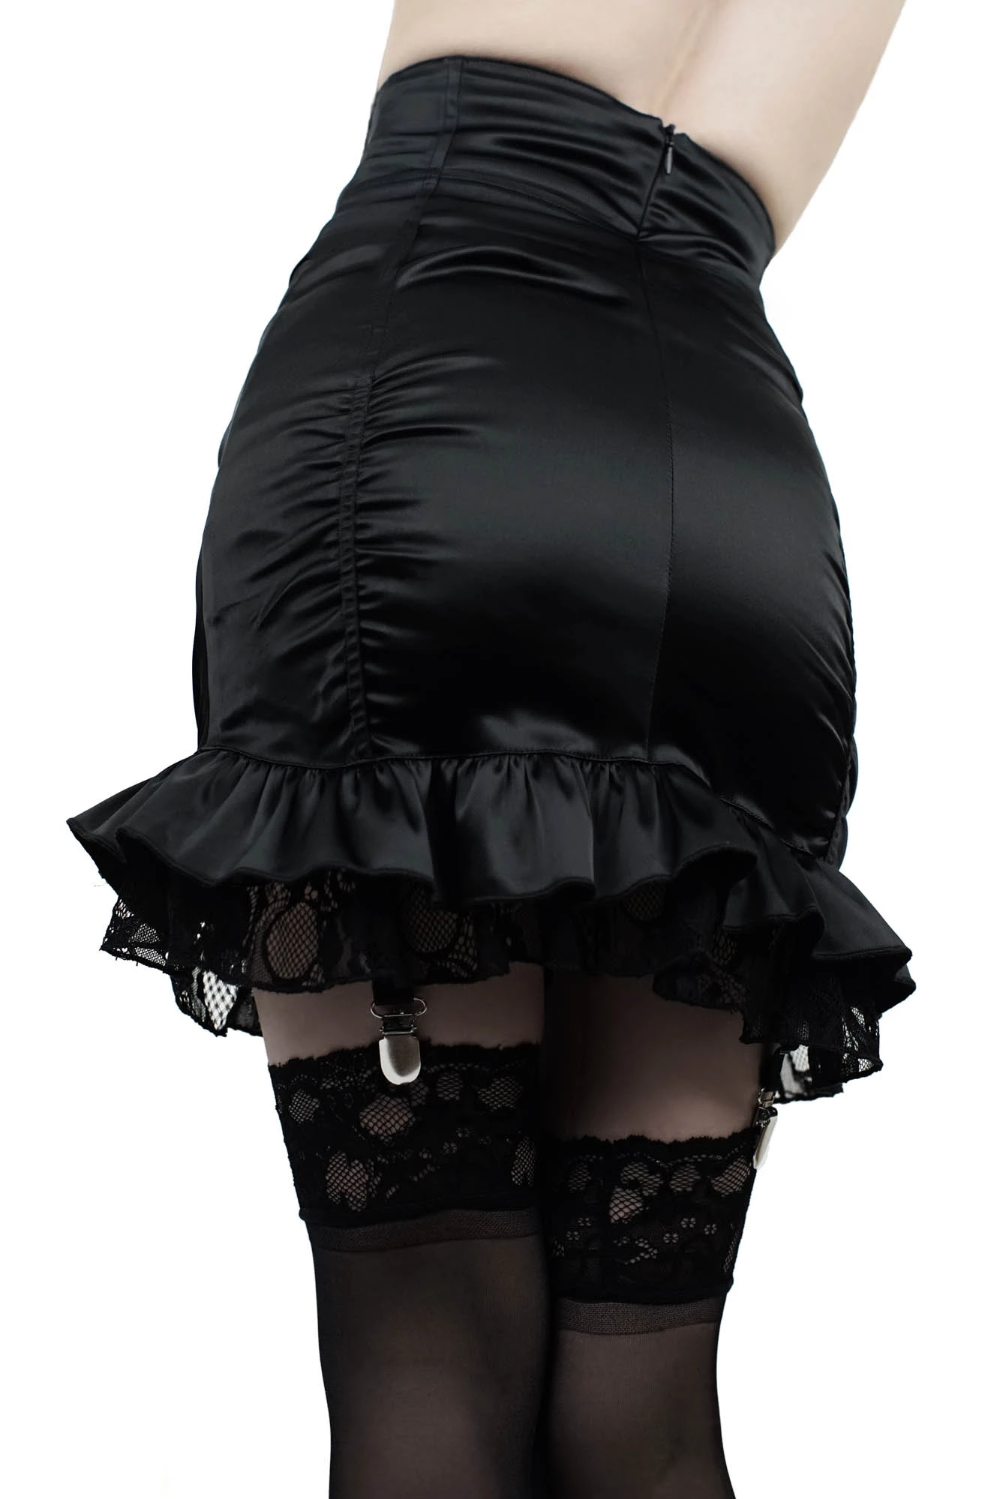 Alice Suspender Skirt -   12 dress Skirt stockings ideas